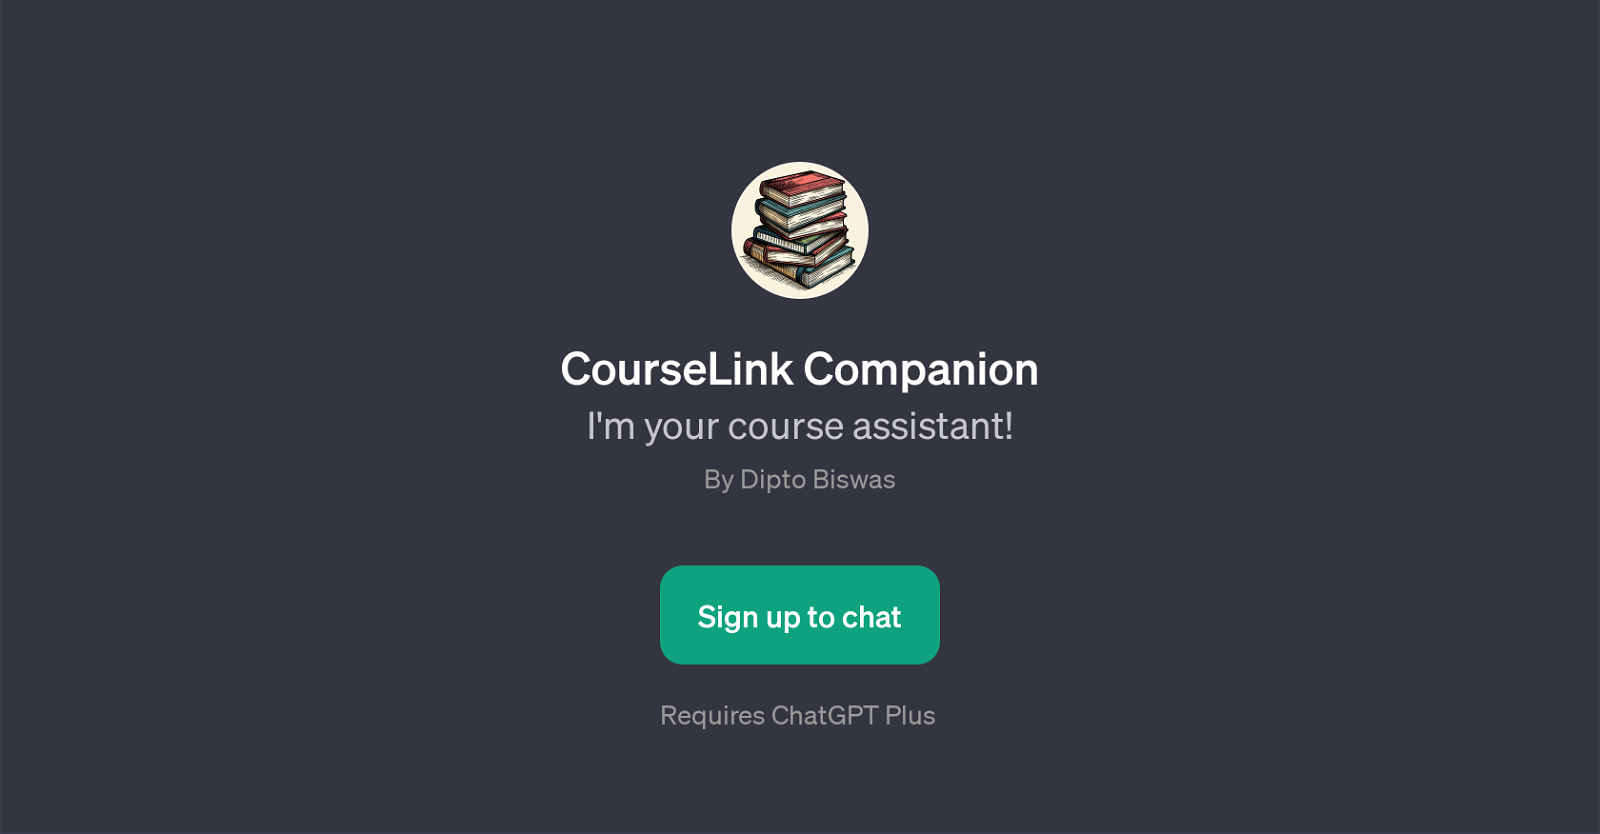 CourseLink Companion website